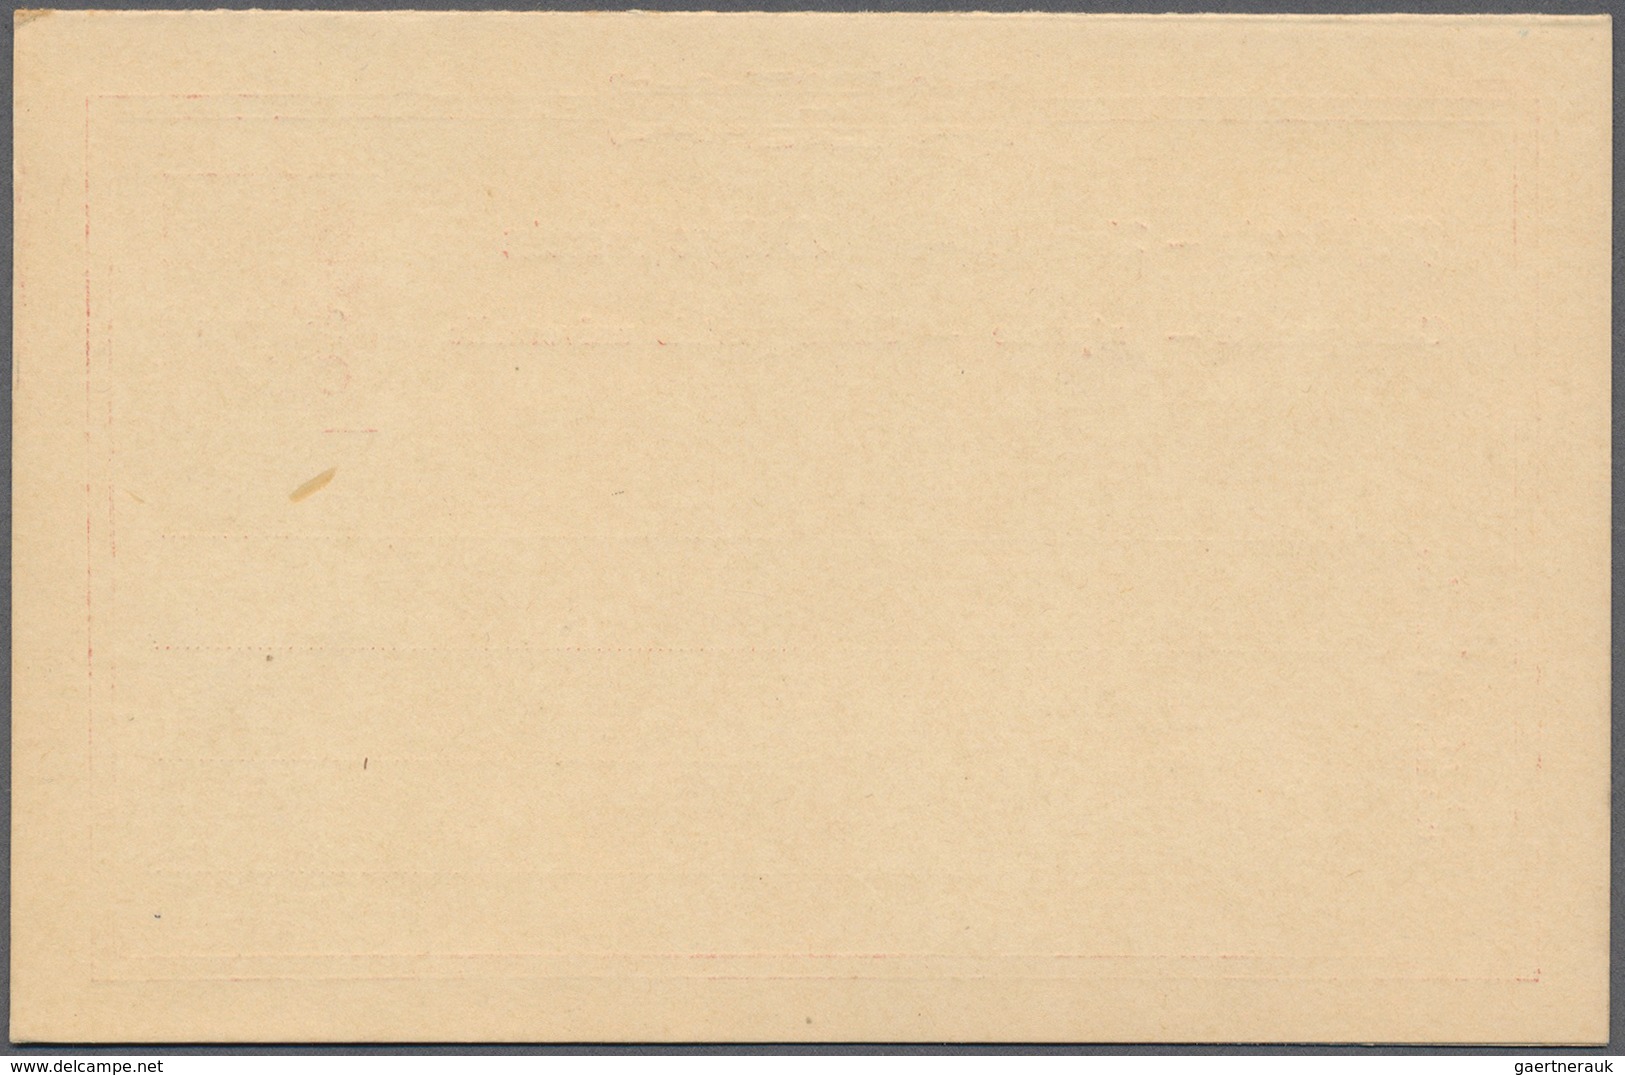 Deutsche Post In China - Ganzsachen: 1901, 10 Pfg. Germania Reichspost Mit Aufdruck, Doppelkarte, Pr - Chine (bureaux)